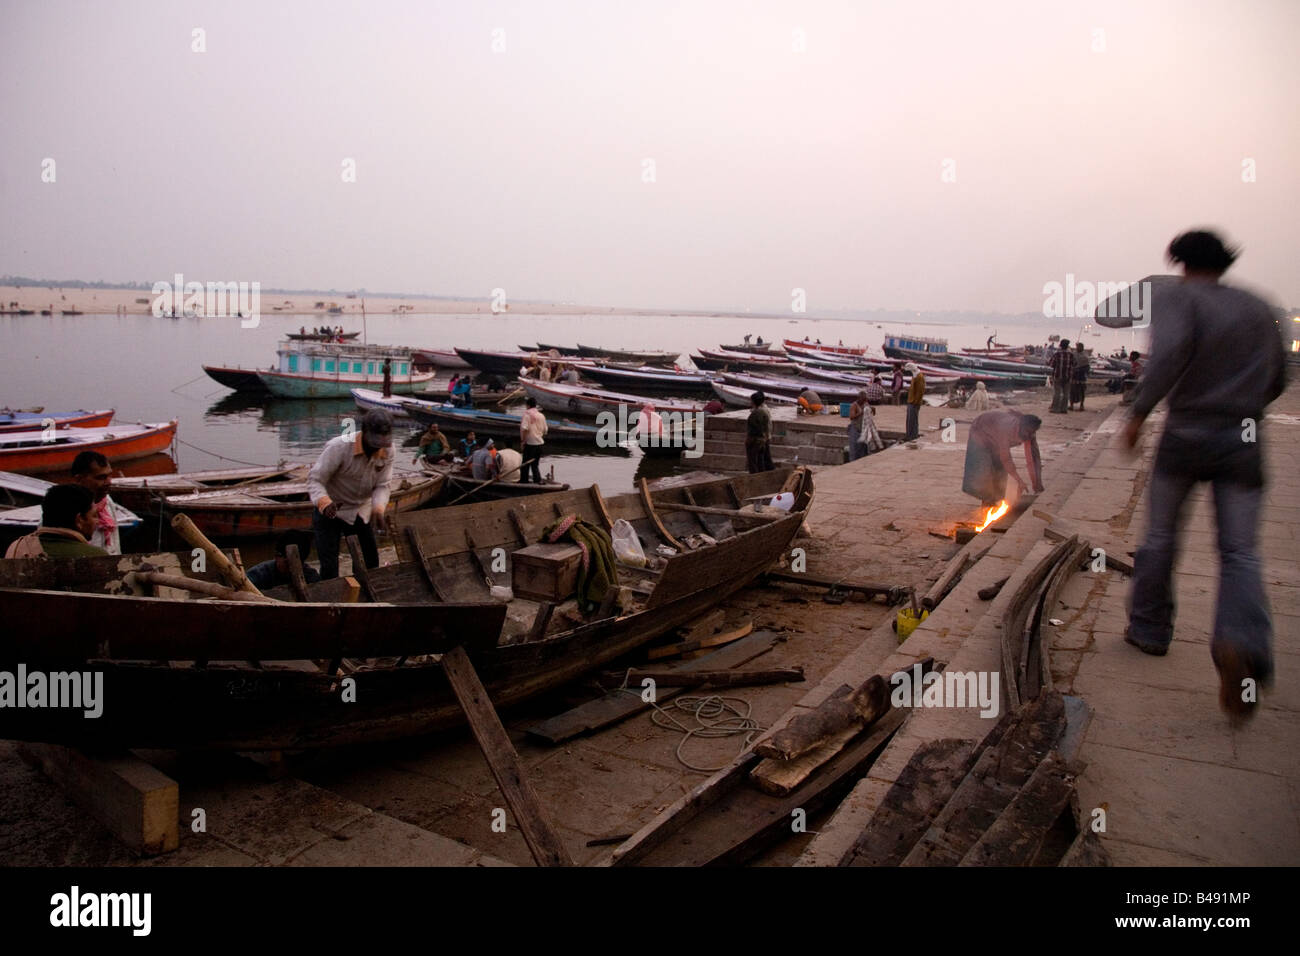 La construction de bateaux au soir, sur les ghats dans la ville de Varanasi, en Inde. Banque D'Images